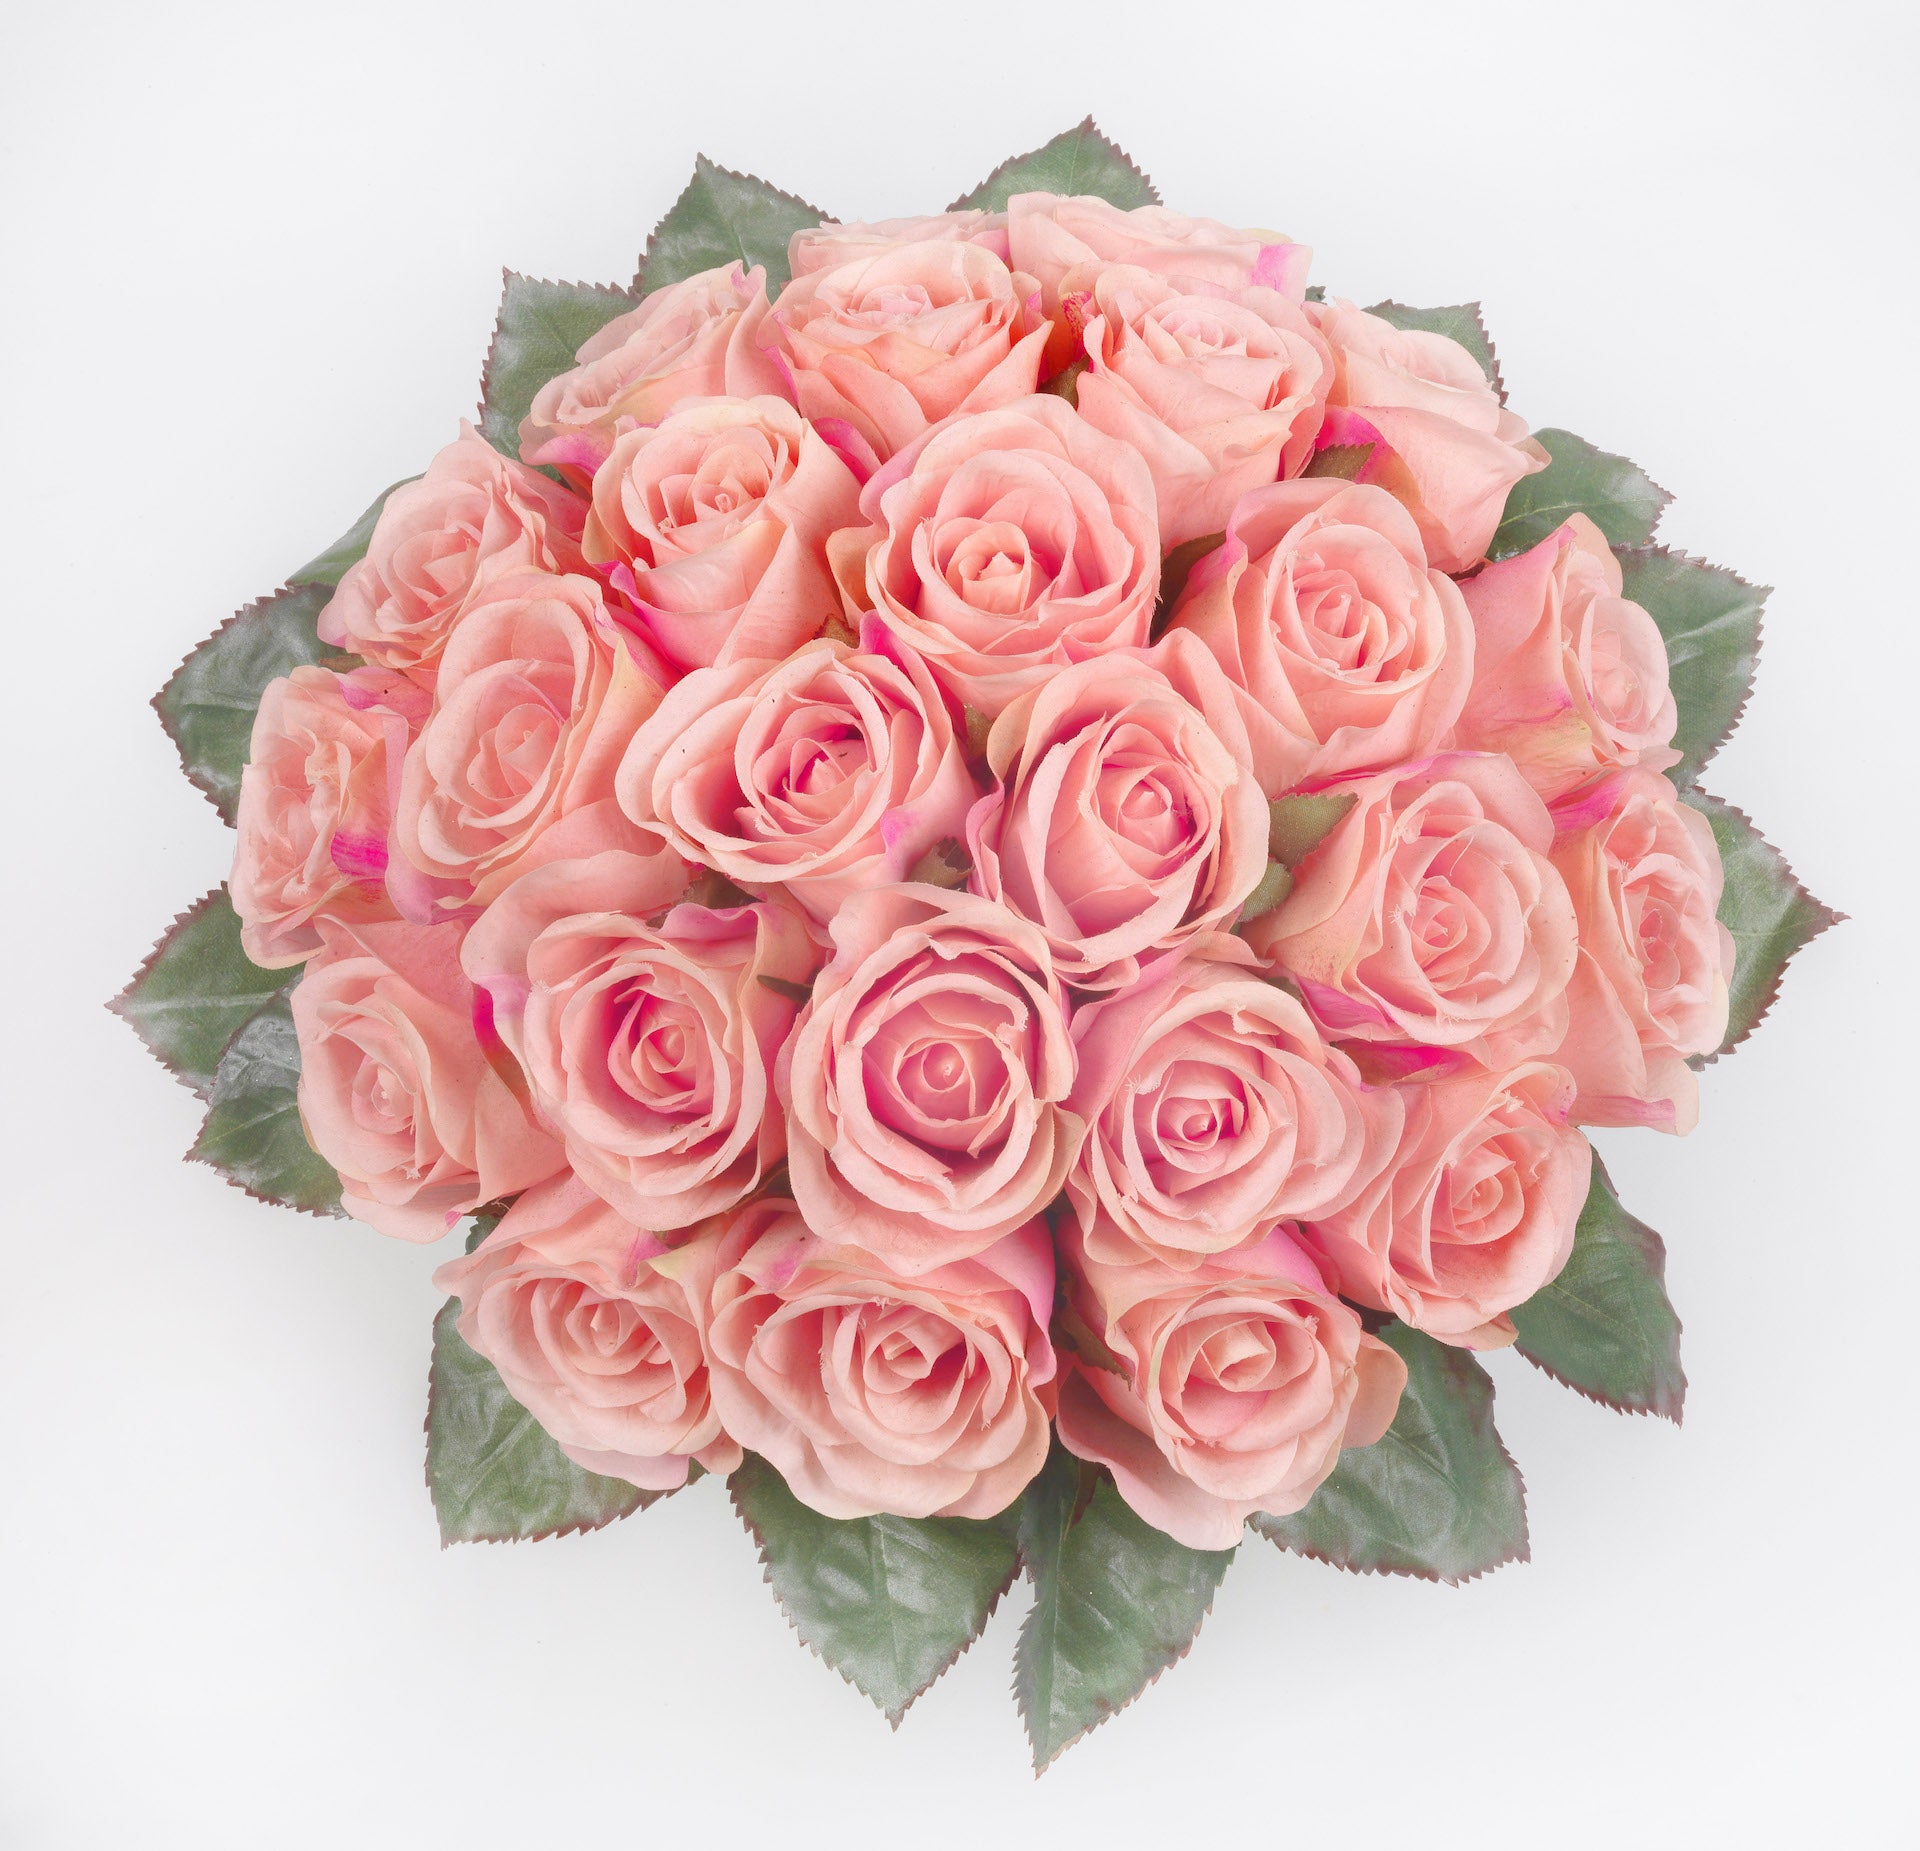 Eleganza Floreale: Il vaso di Rose Artificiali con Illusione d'Acqua